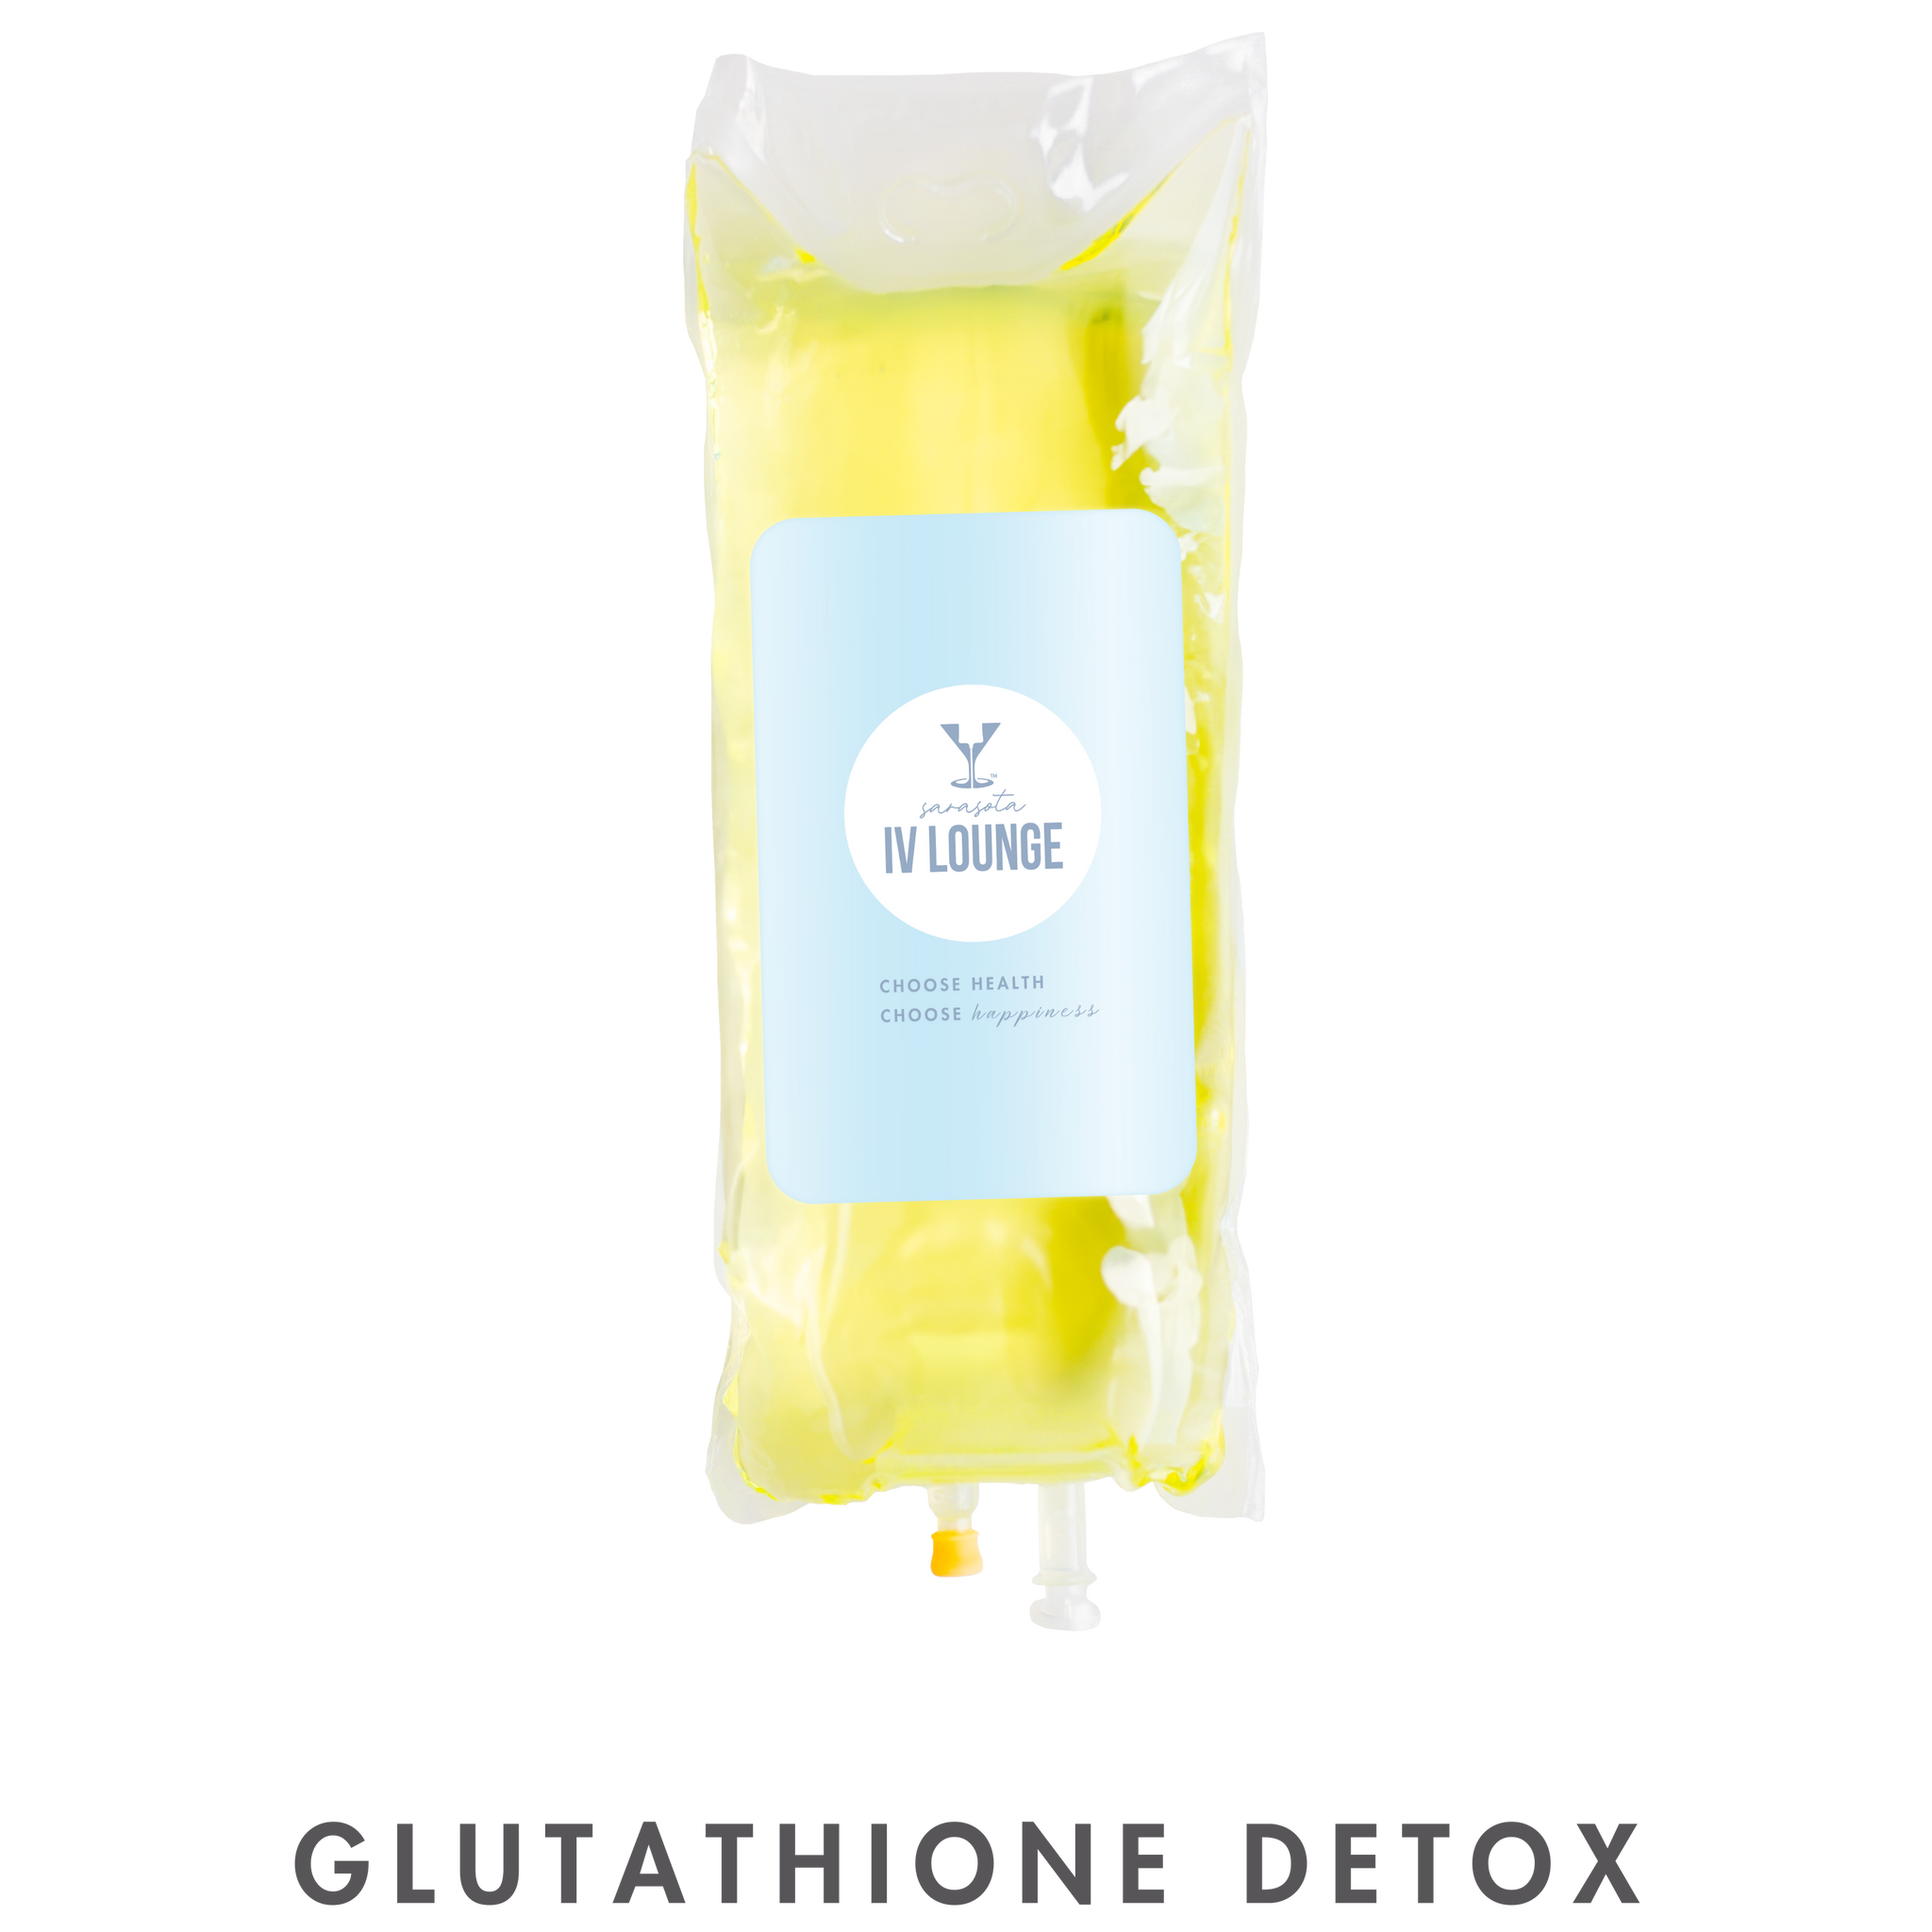 Glutathione Detox